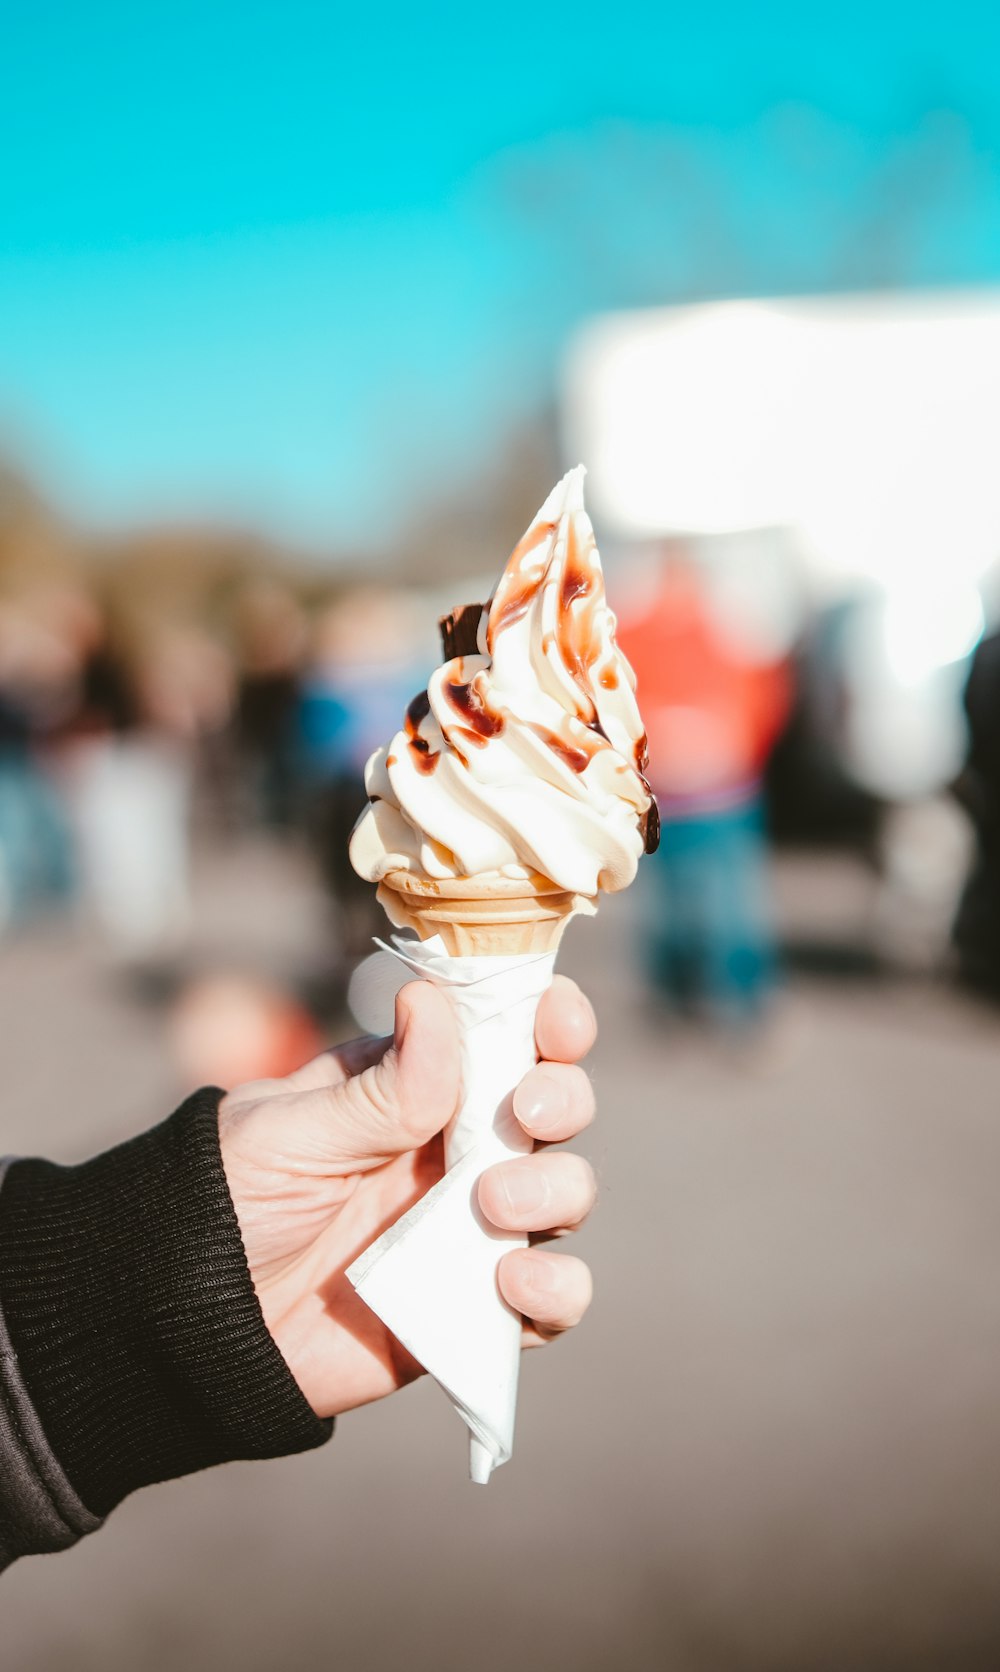 Una persona sostiene un cono de helado en la mano